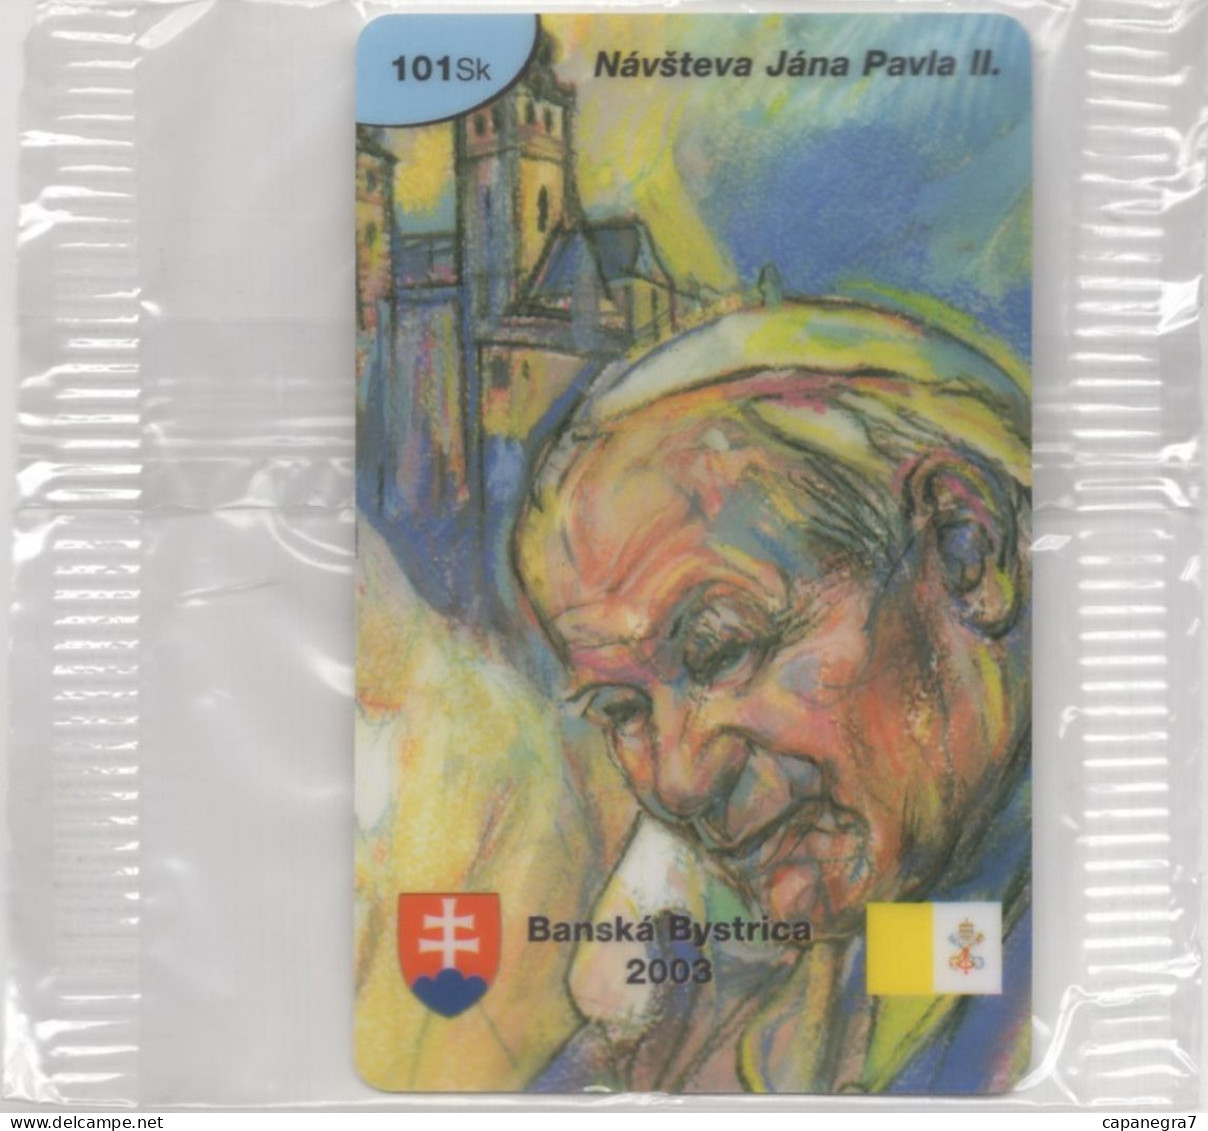 Pope John Paulu II. - Banská Bystica 2003, Prepaid Calling Card, 101 Sk., 1.250 Pc., GlobalIPhone, Slovak, Mint, Packed - Eslovaquia